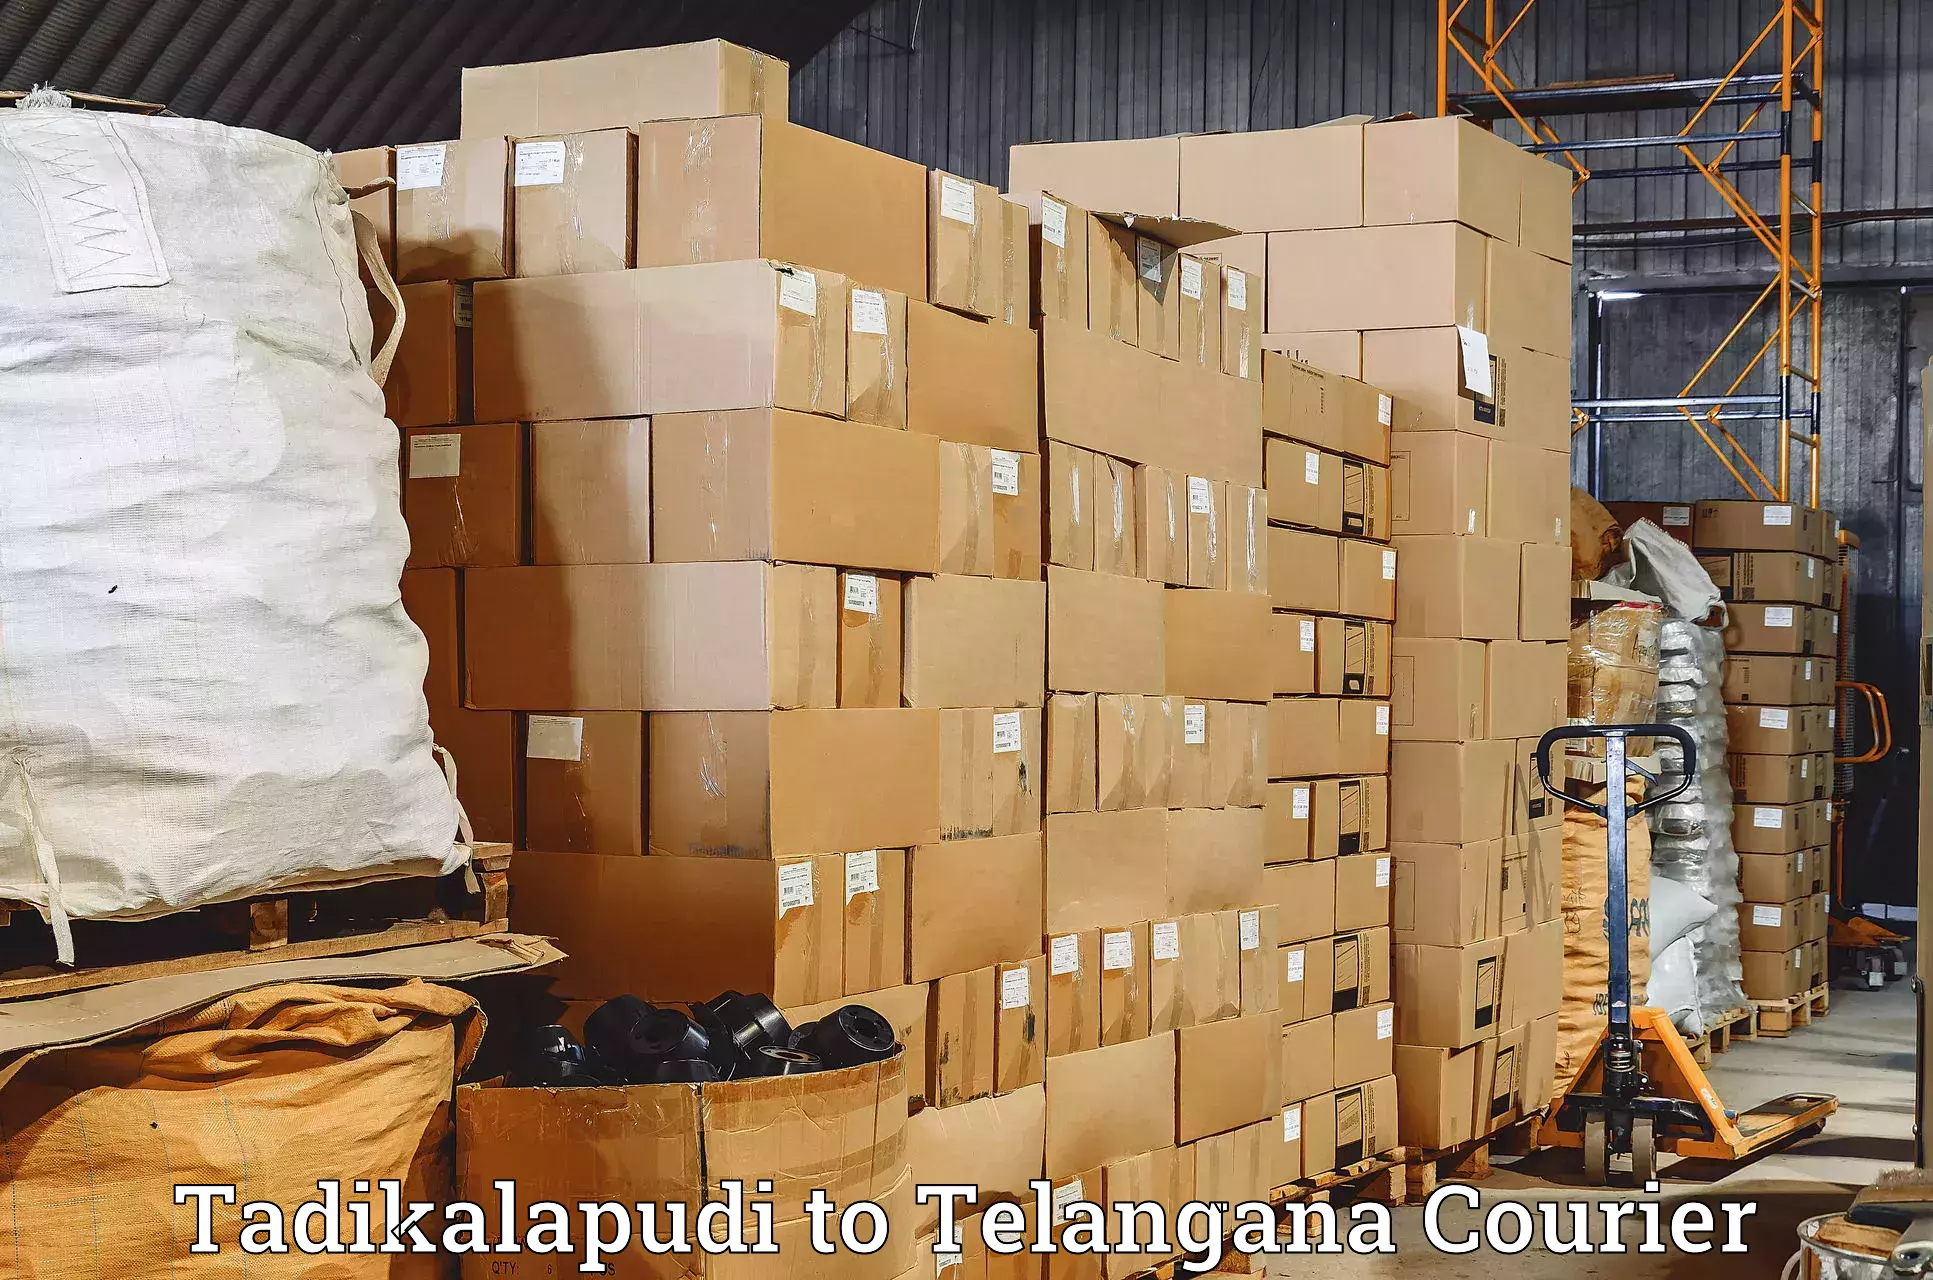 Full-service courier options Tadikalapudi to Ibrahimpatnam